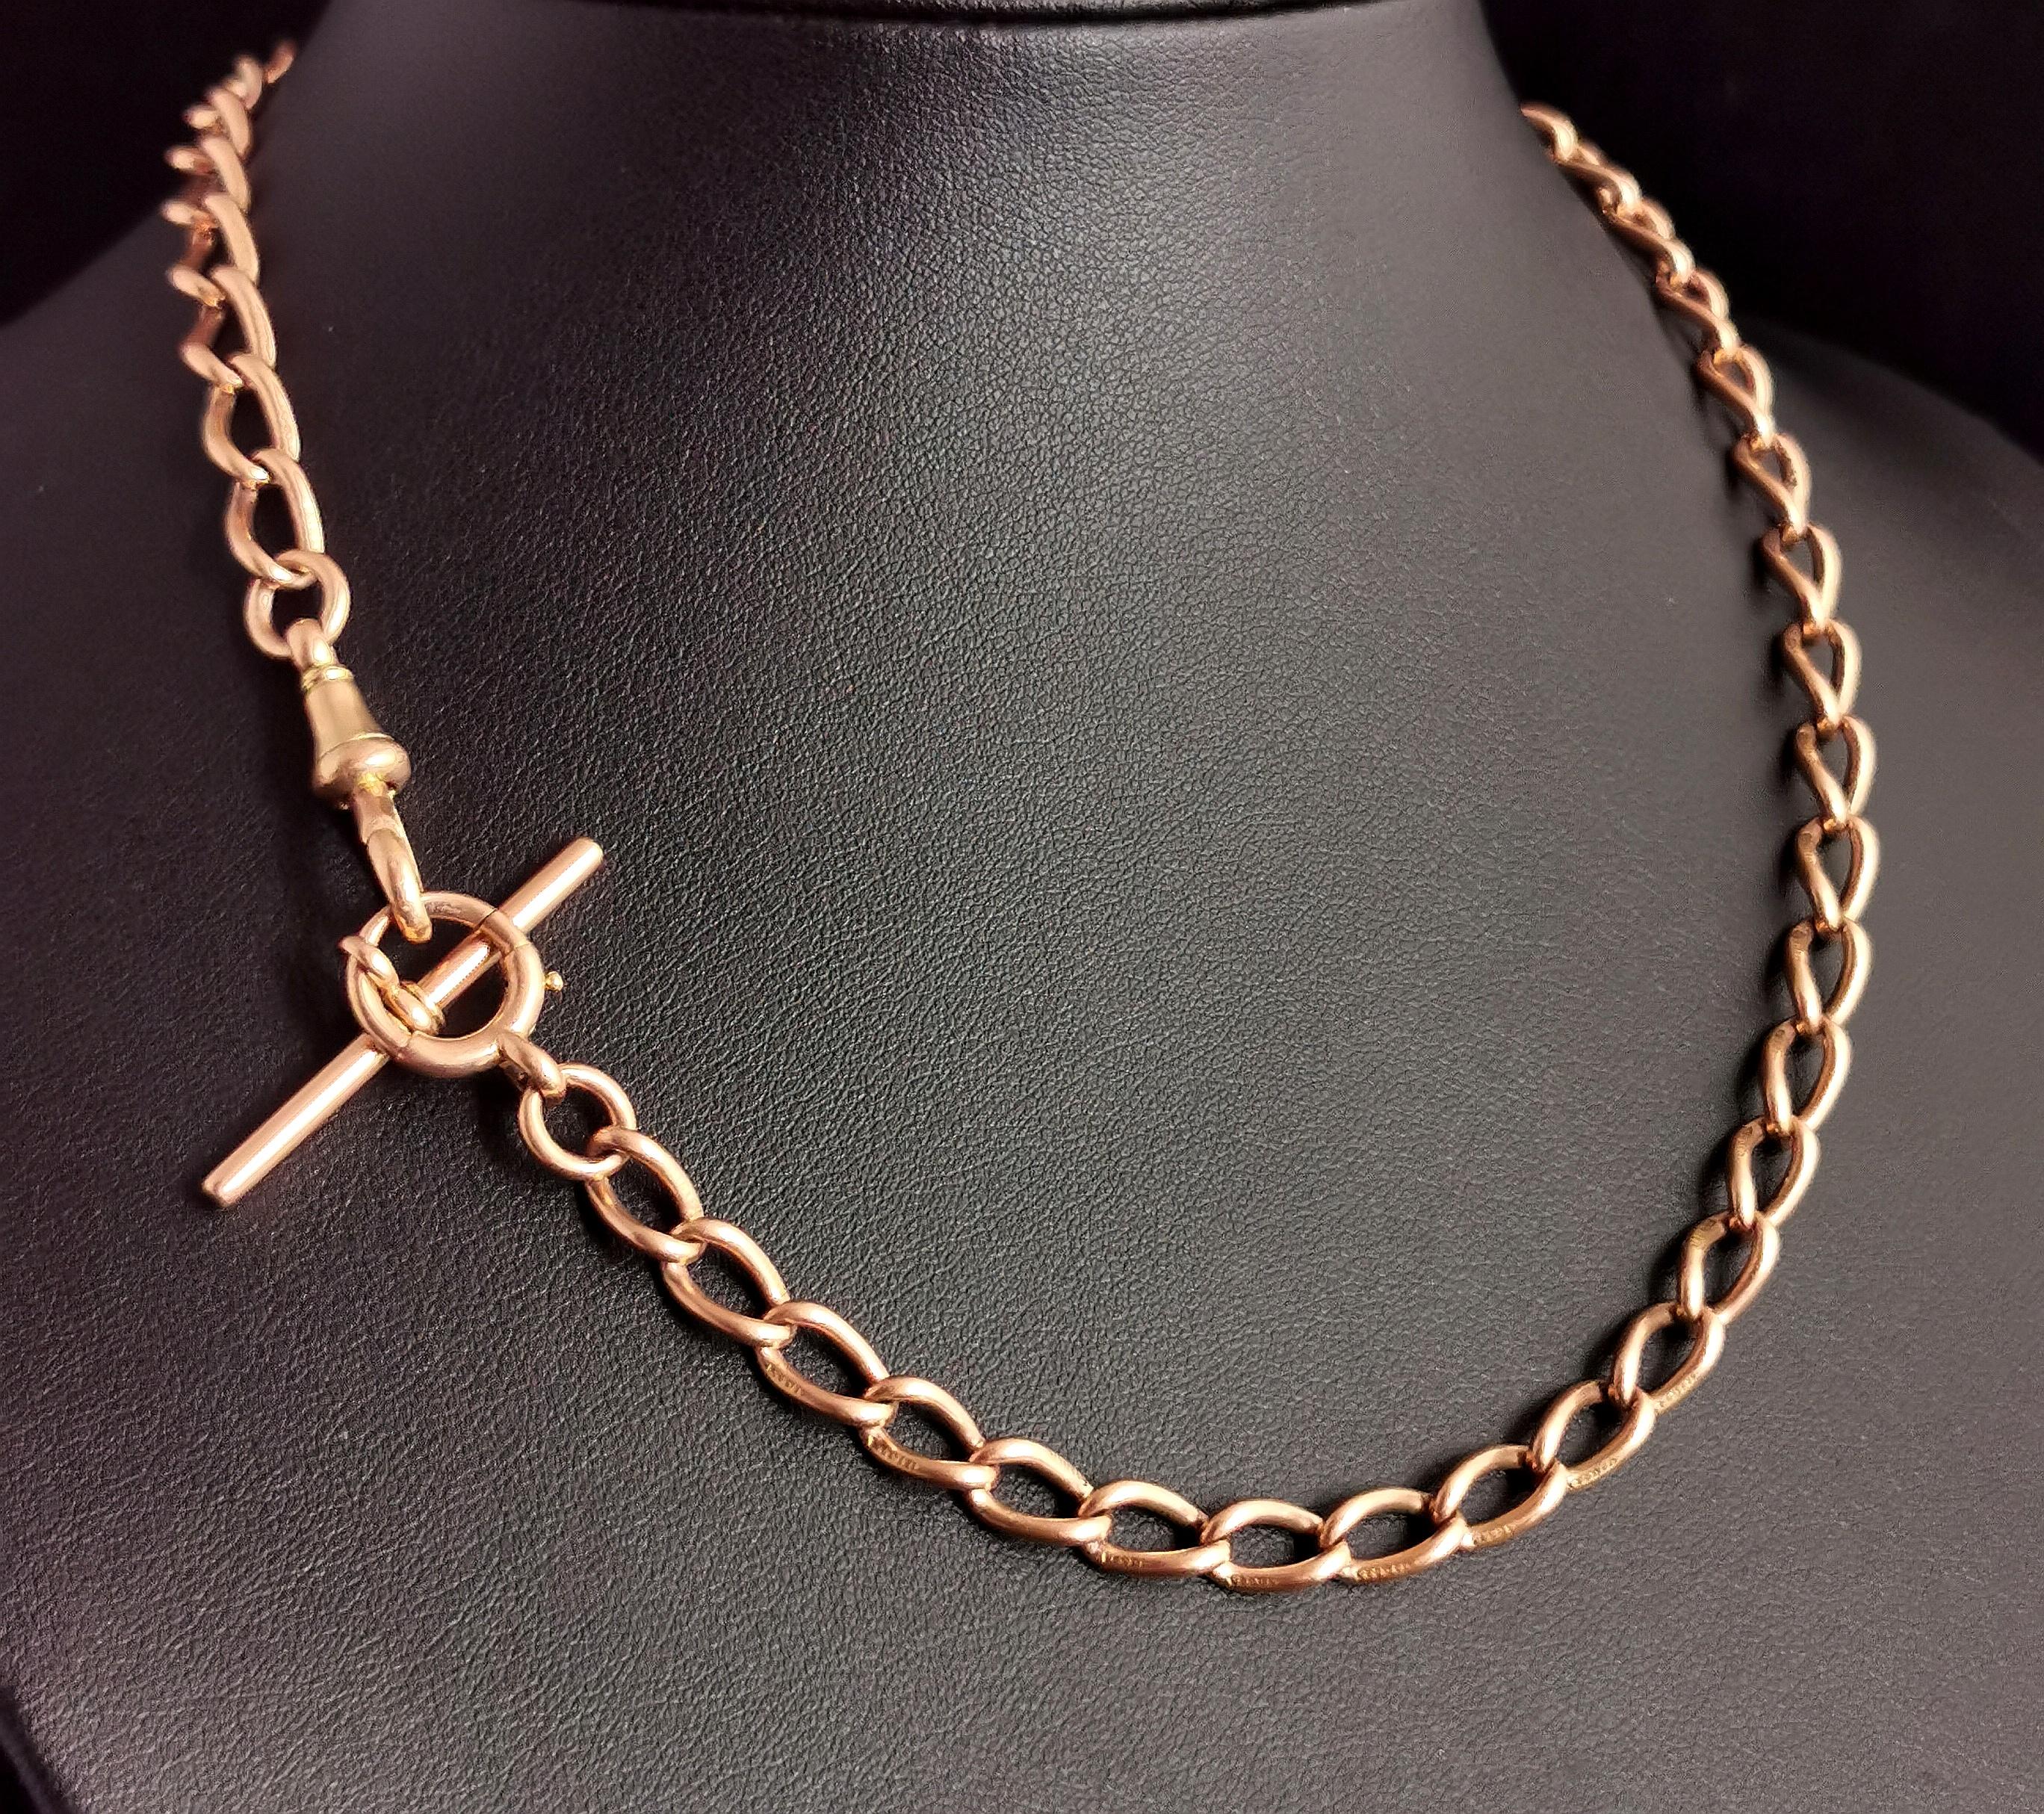 Antique 15k Gold Albert Chain, Watch Chain Necklace, Victorian 3